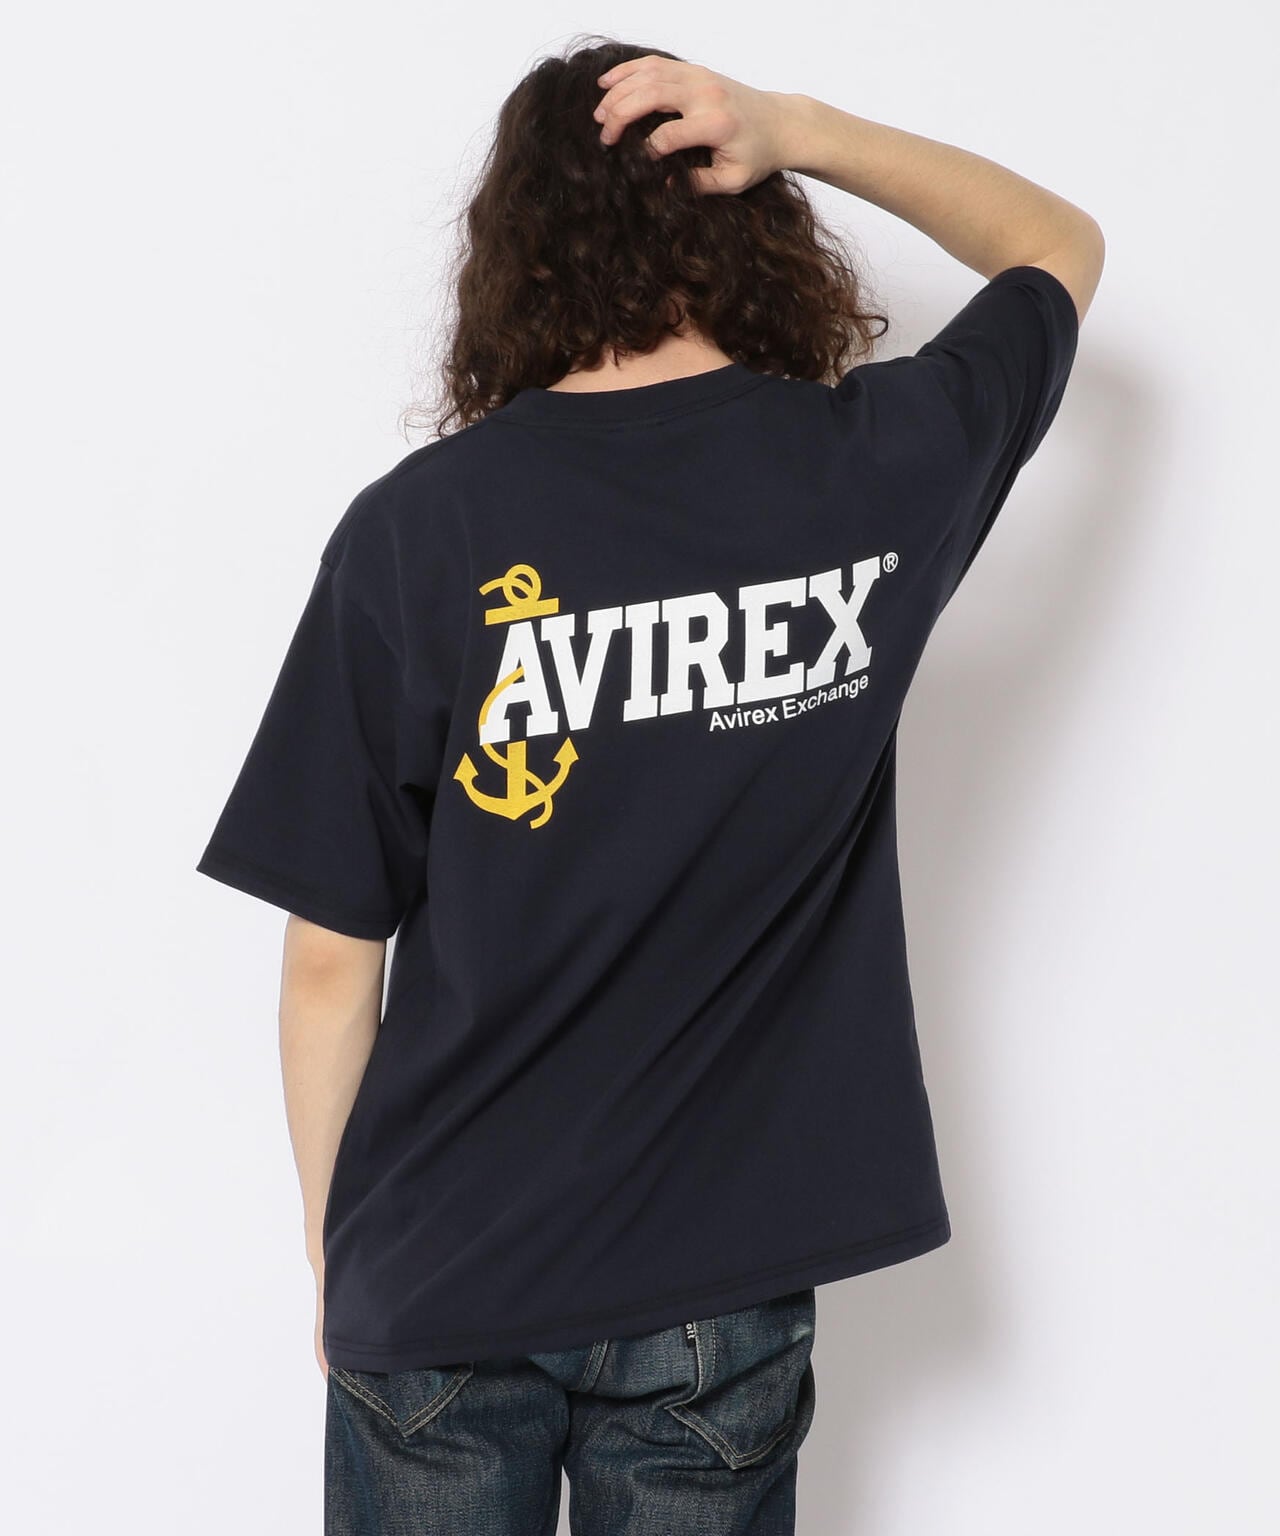 AEX ユニフォーム Tシャツ/AEX UNIFORM T-SHIRT